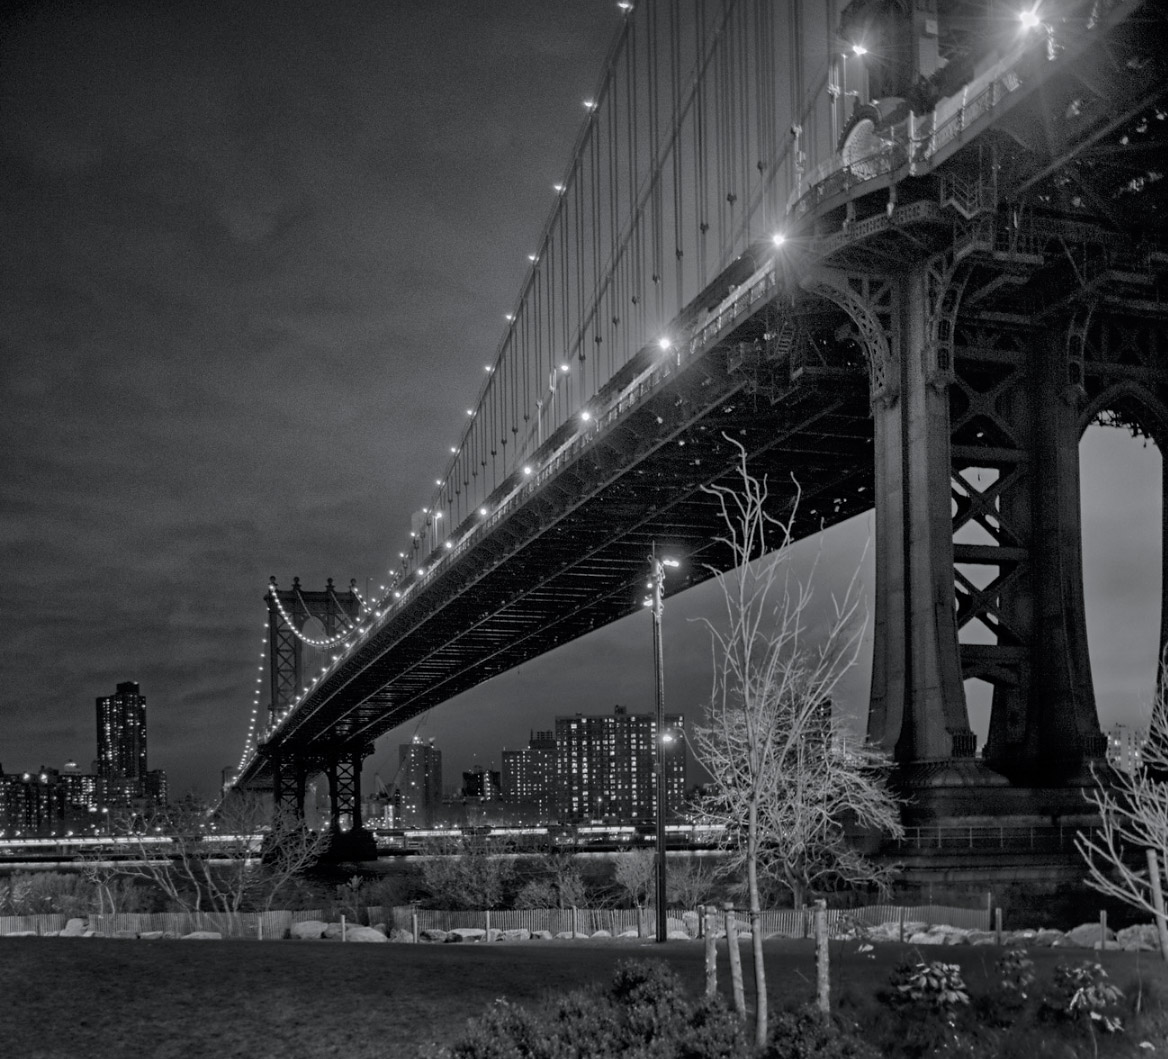 “Manhattan Bridge in the dark” by Galskjaer